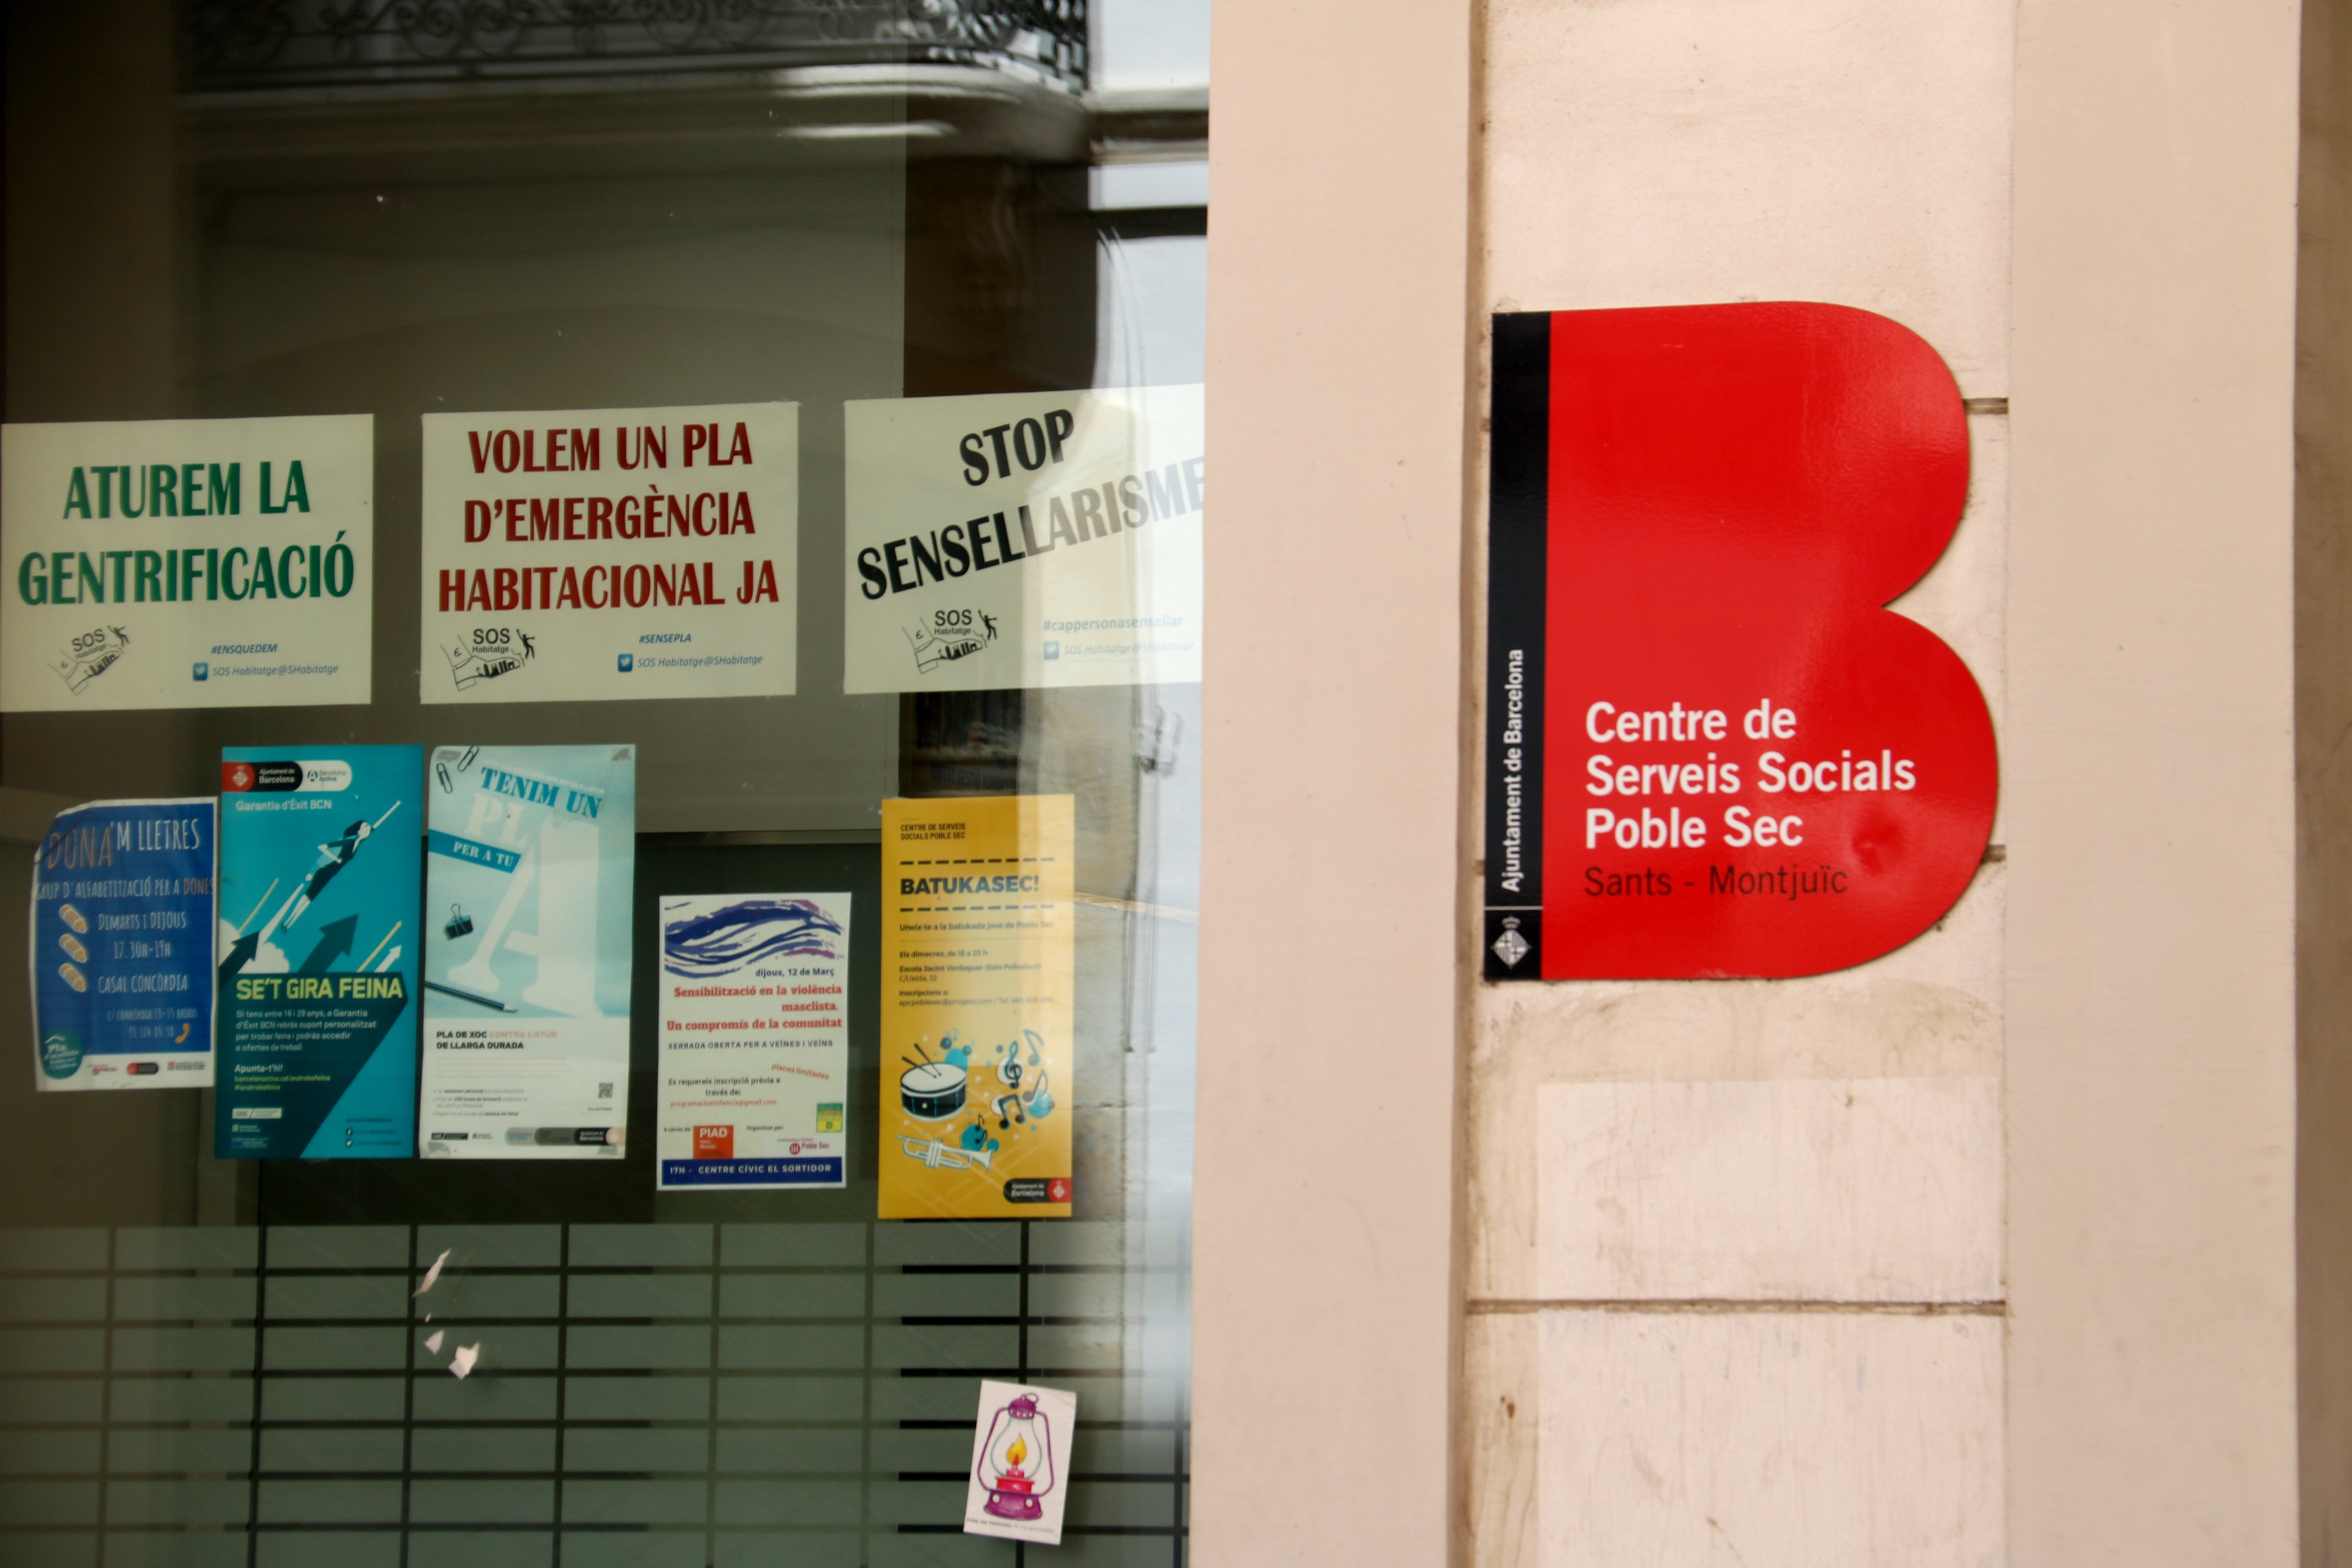 Dimiteix el gerent del Consorci de Serveis Socials de Barcelona